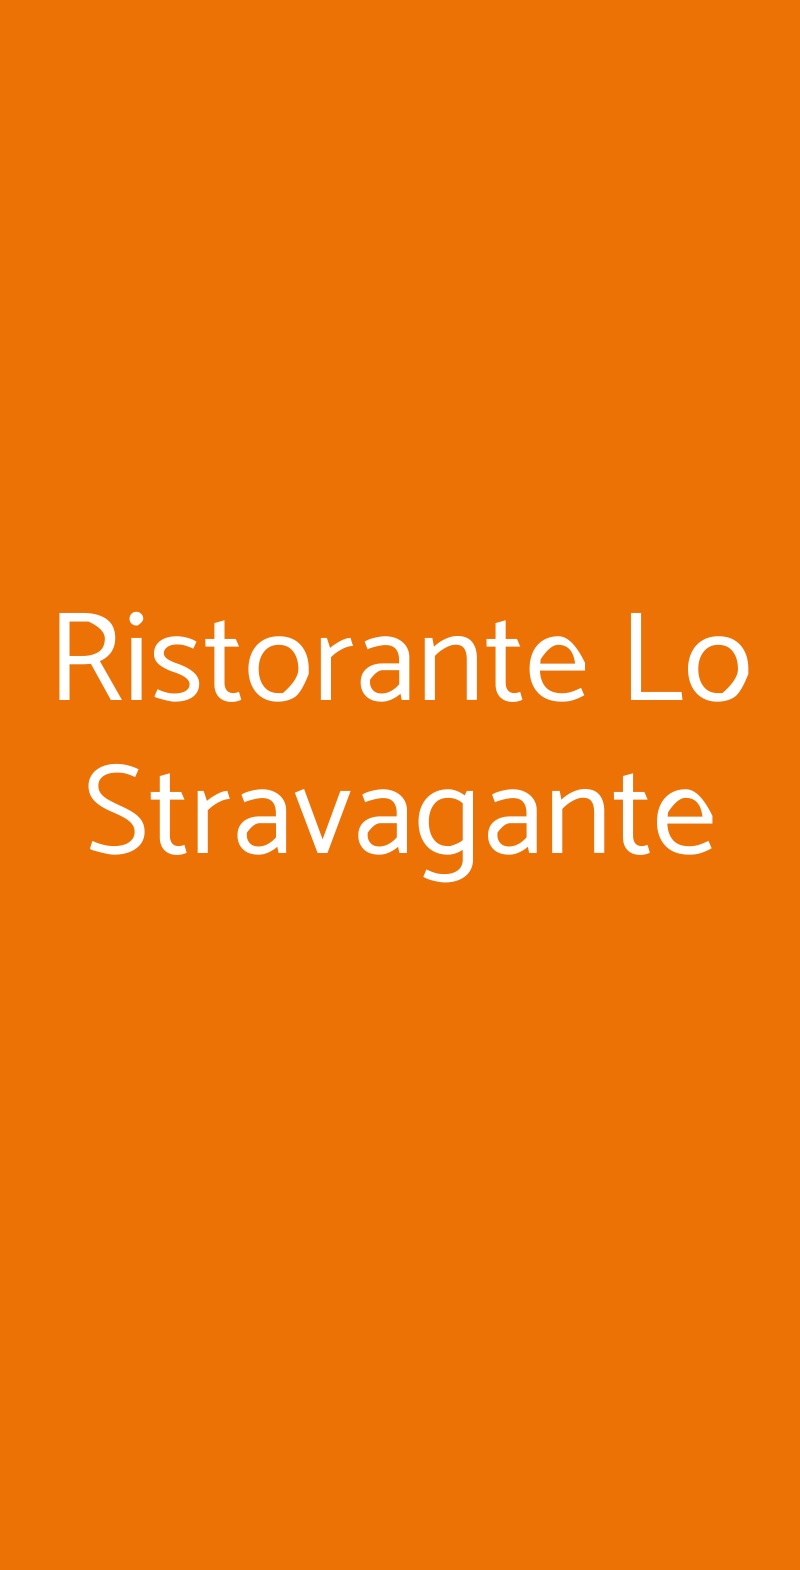 Ristorante Lo Stravagante Firenze menù 1 pagina